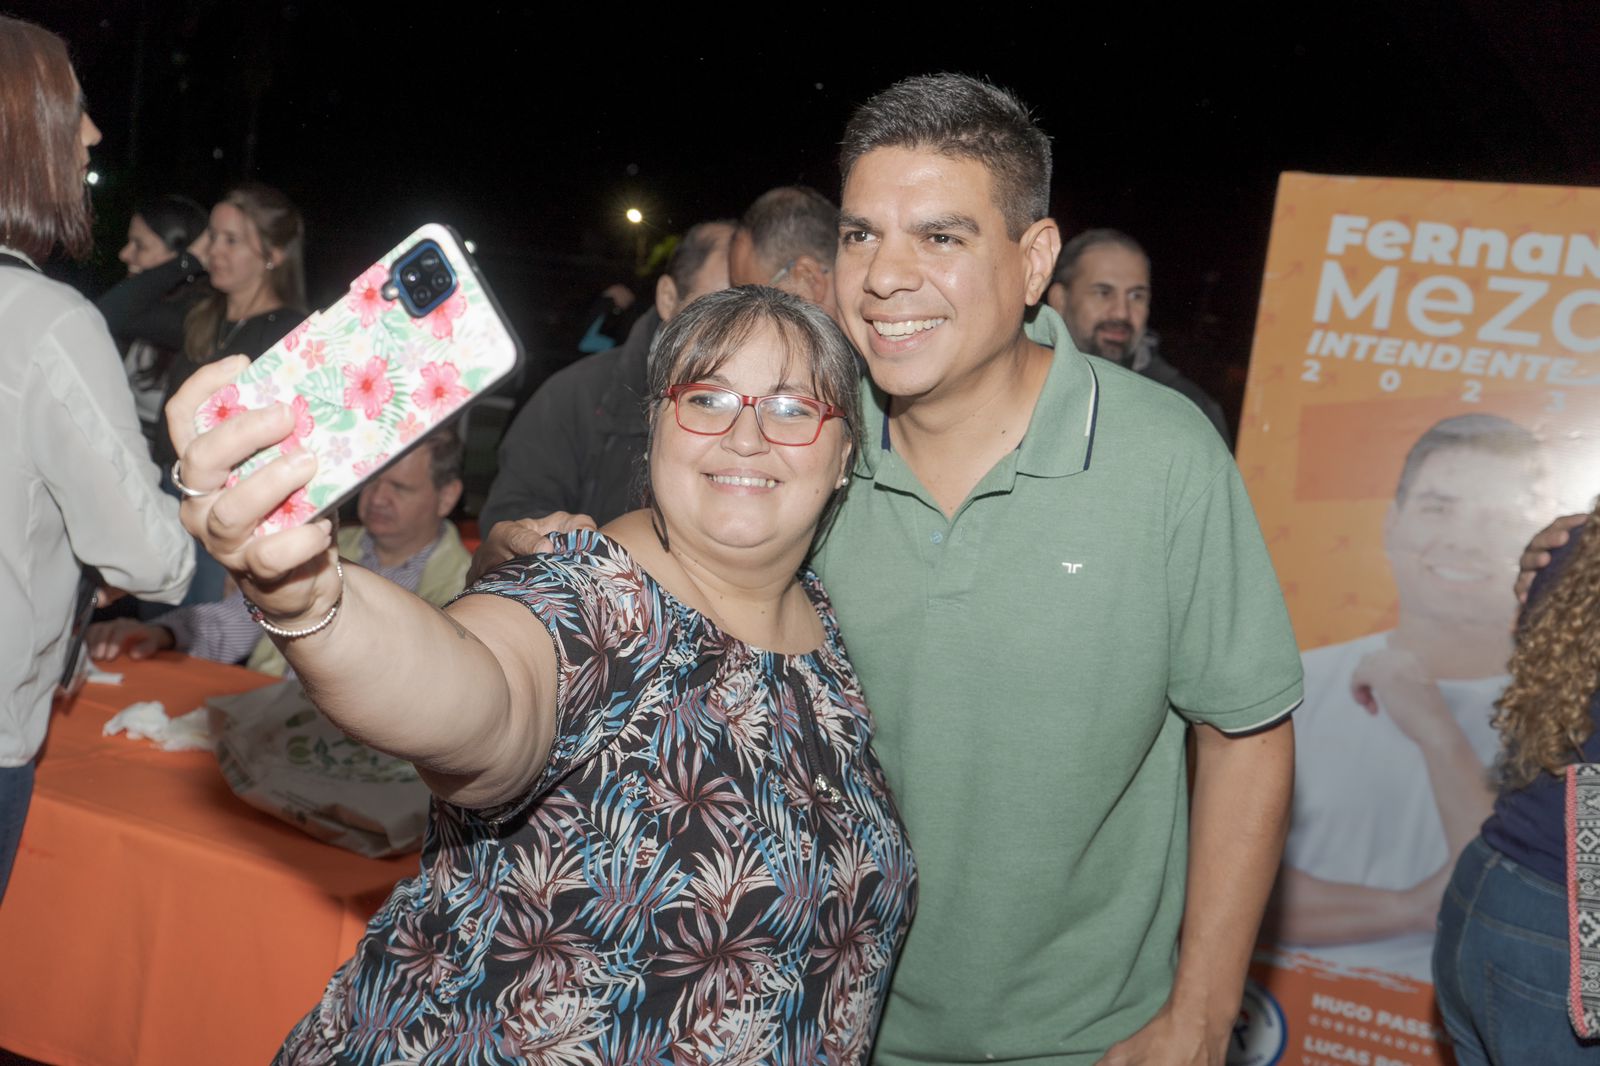 Más de 300 docentes expresaron su apoyo al candidato Fernando Meza imagen-6